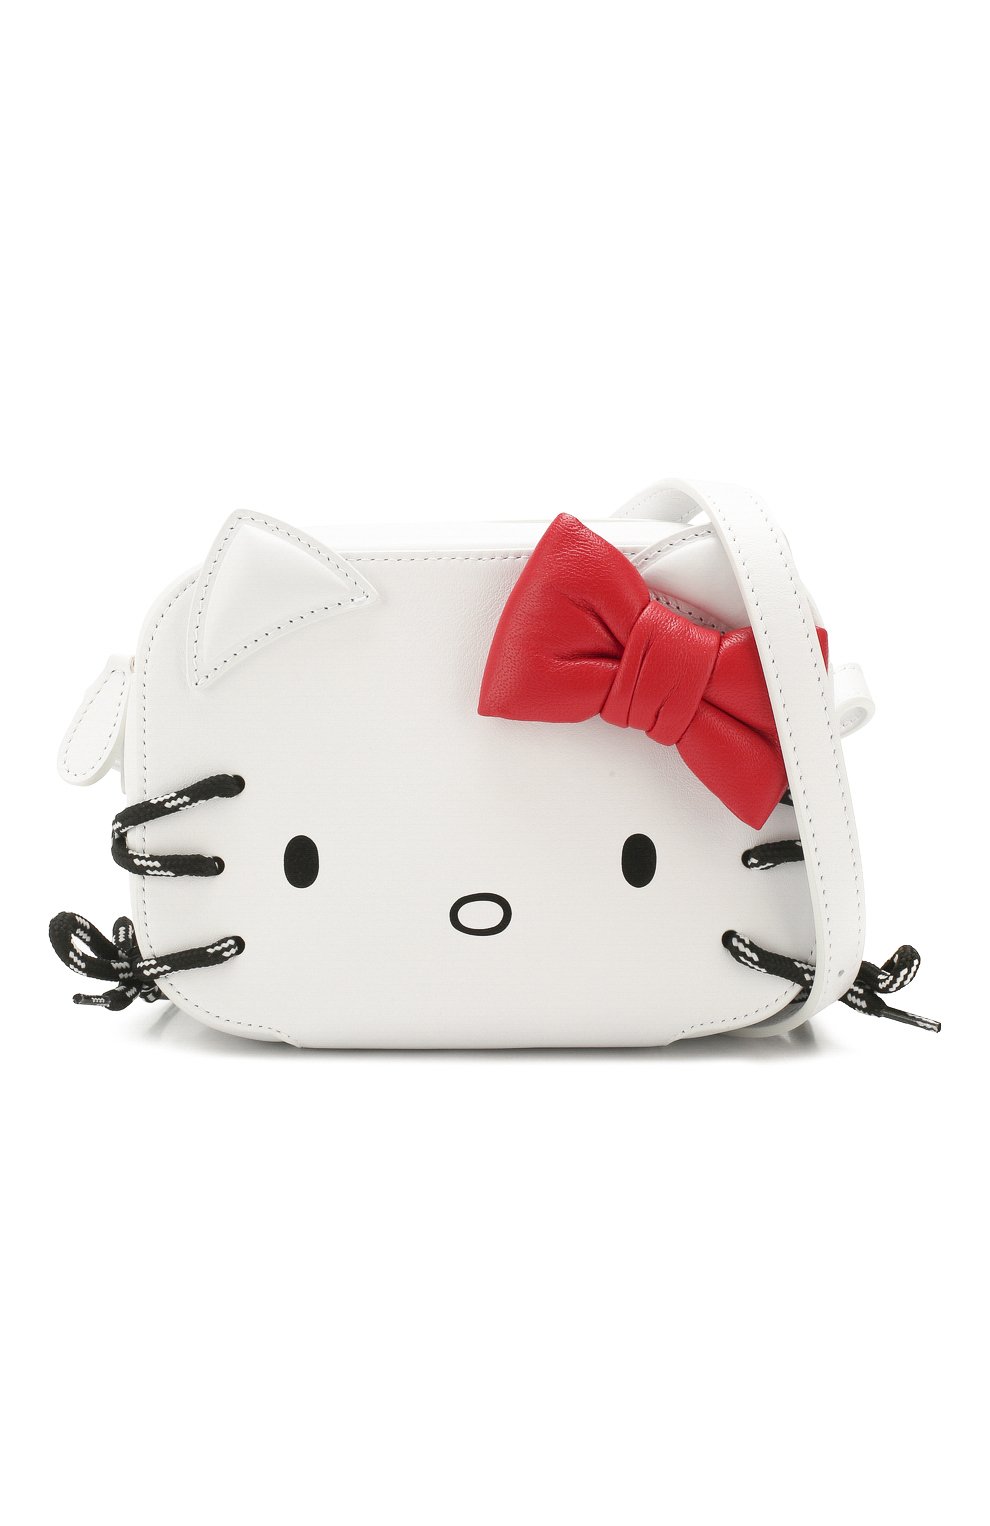 Женская белая сумка hello kitty xxs BALENCIAGA купить в интернет-магазине ЦУМ, арт. 619012/1CB03